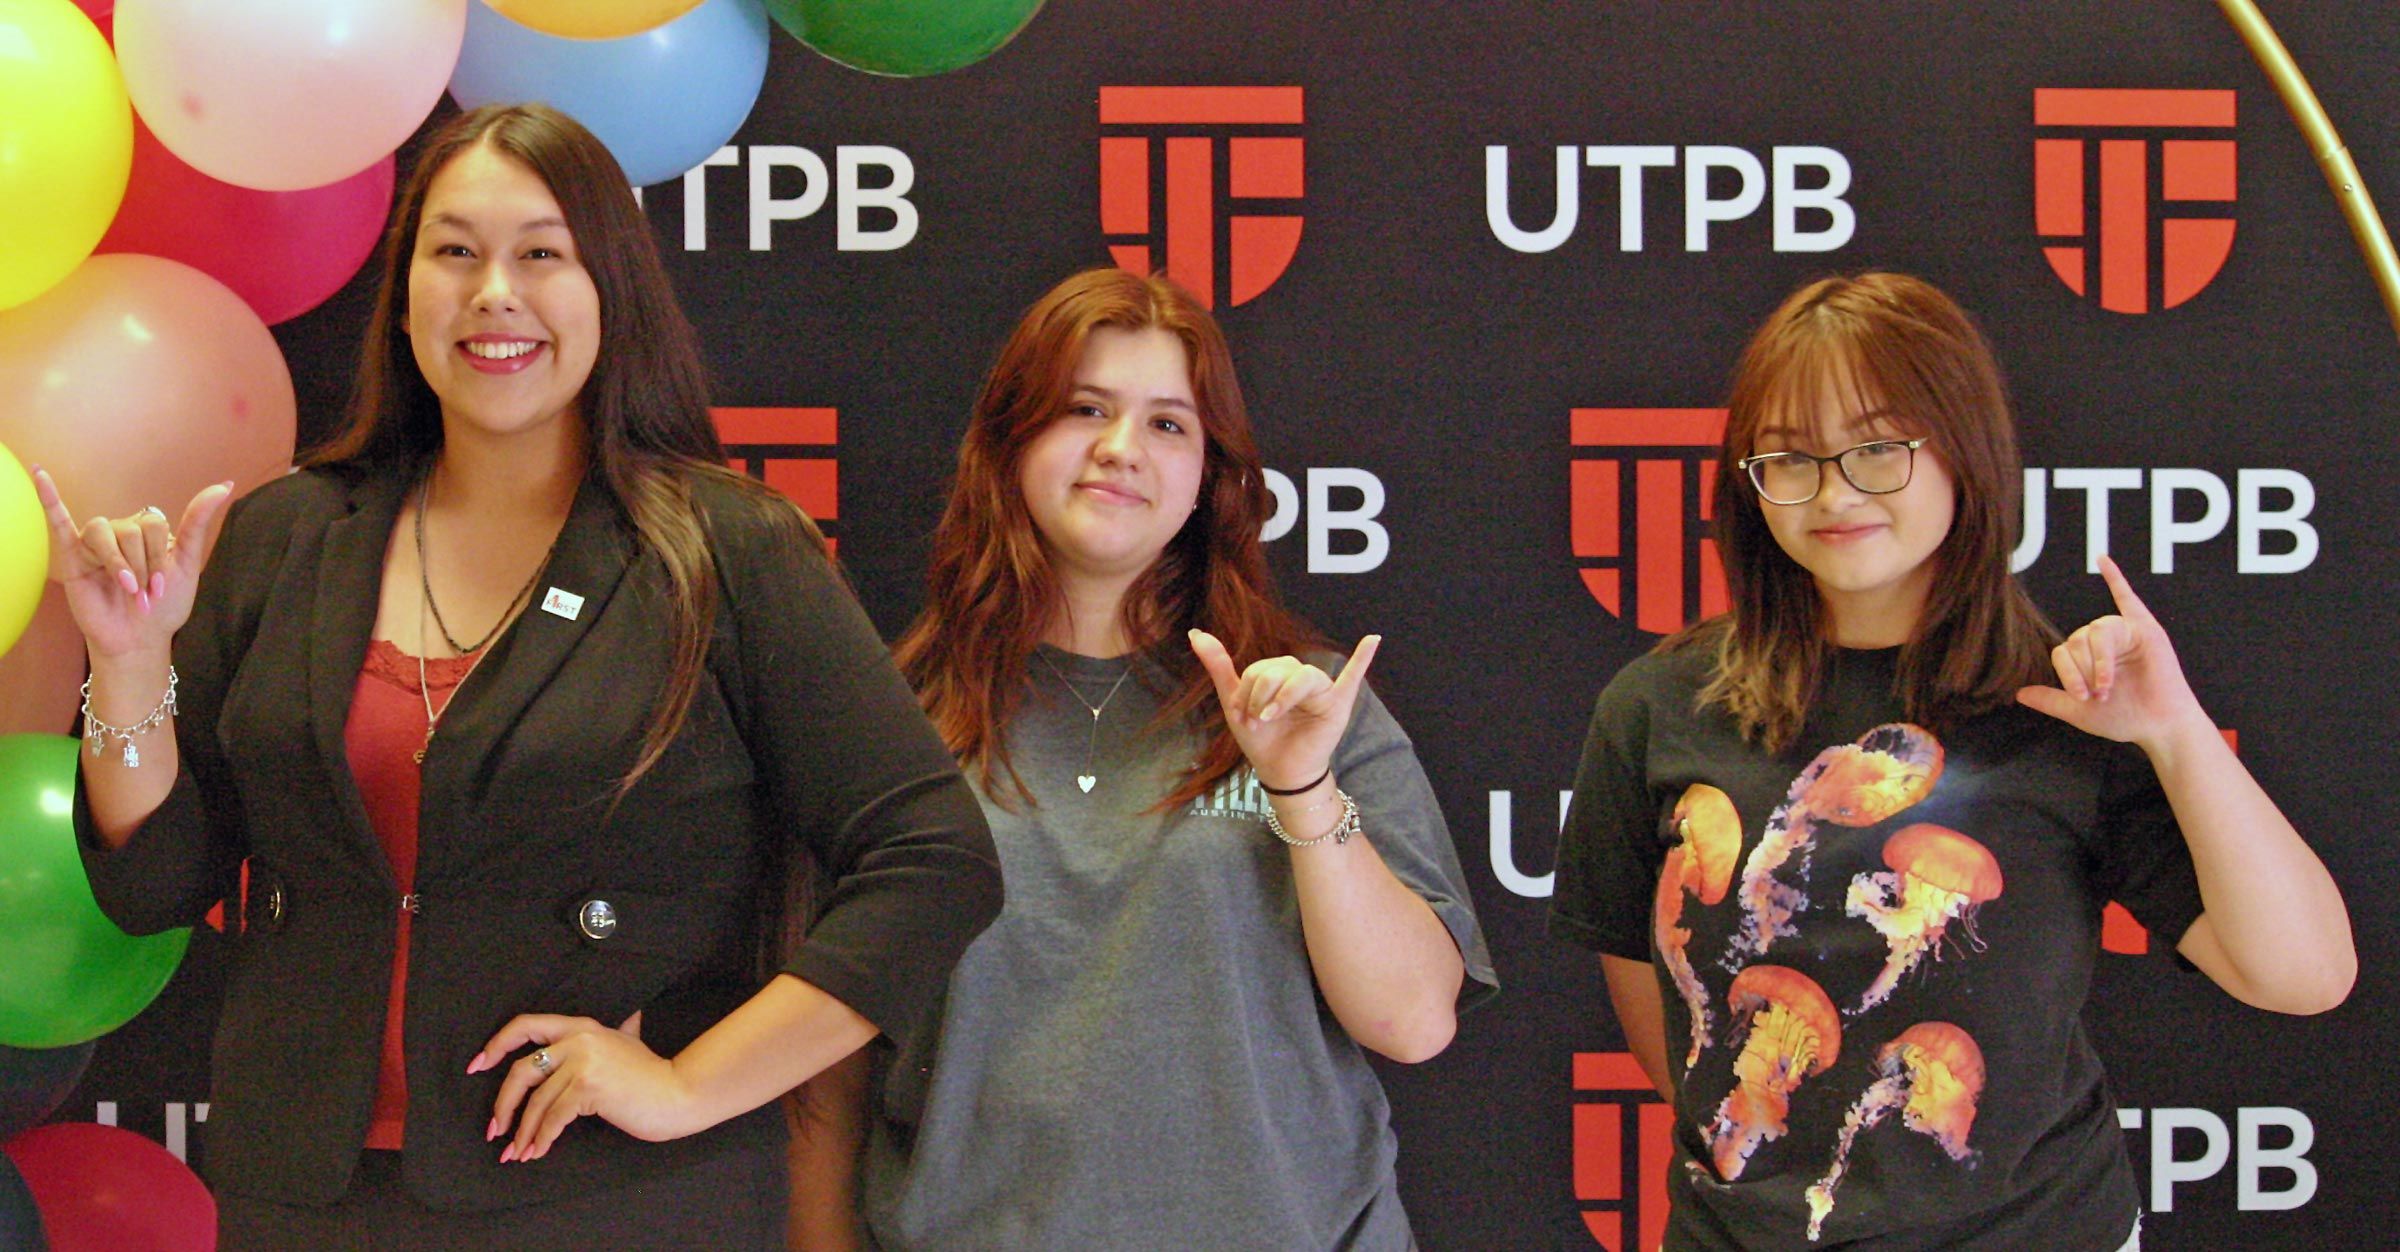 Estudiantes de primera generación posan para una fotografía en celebración de la UTPB